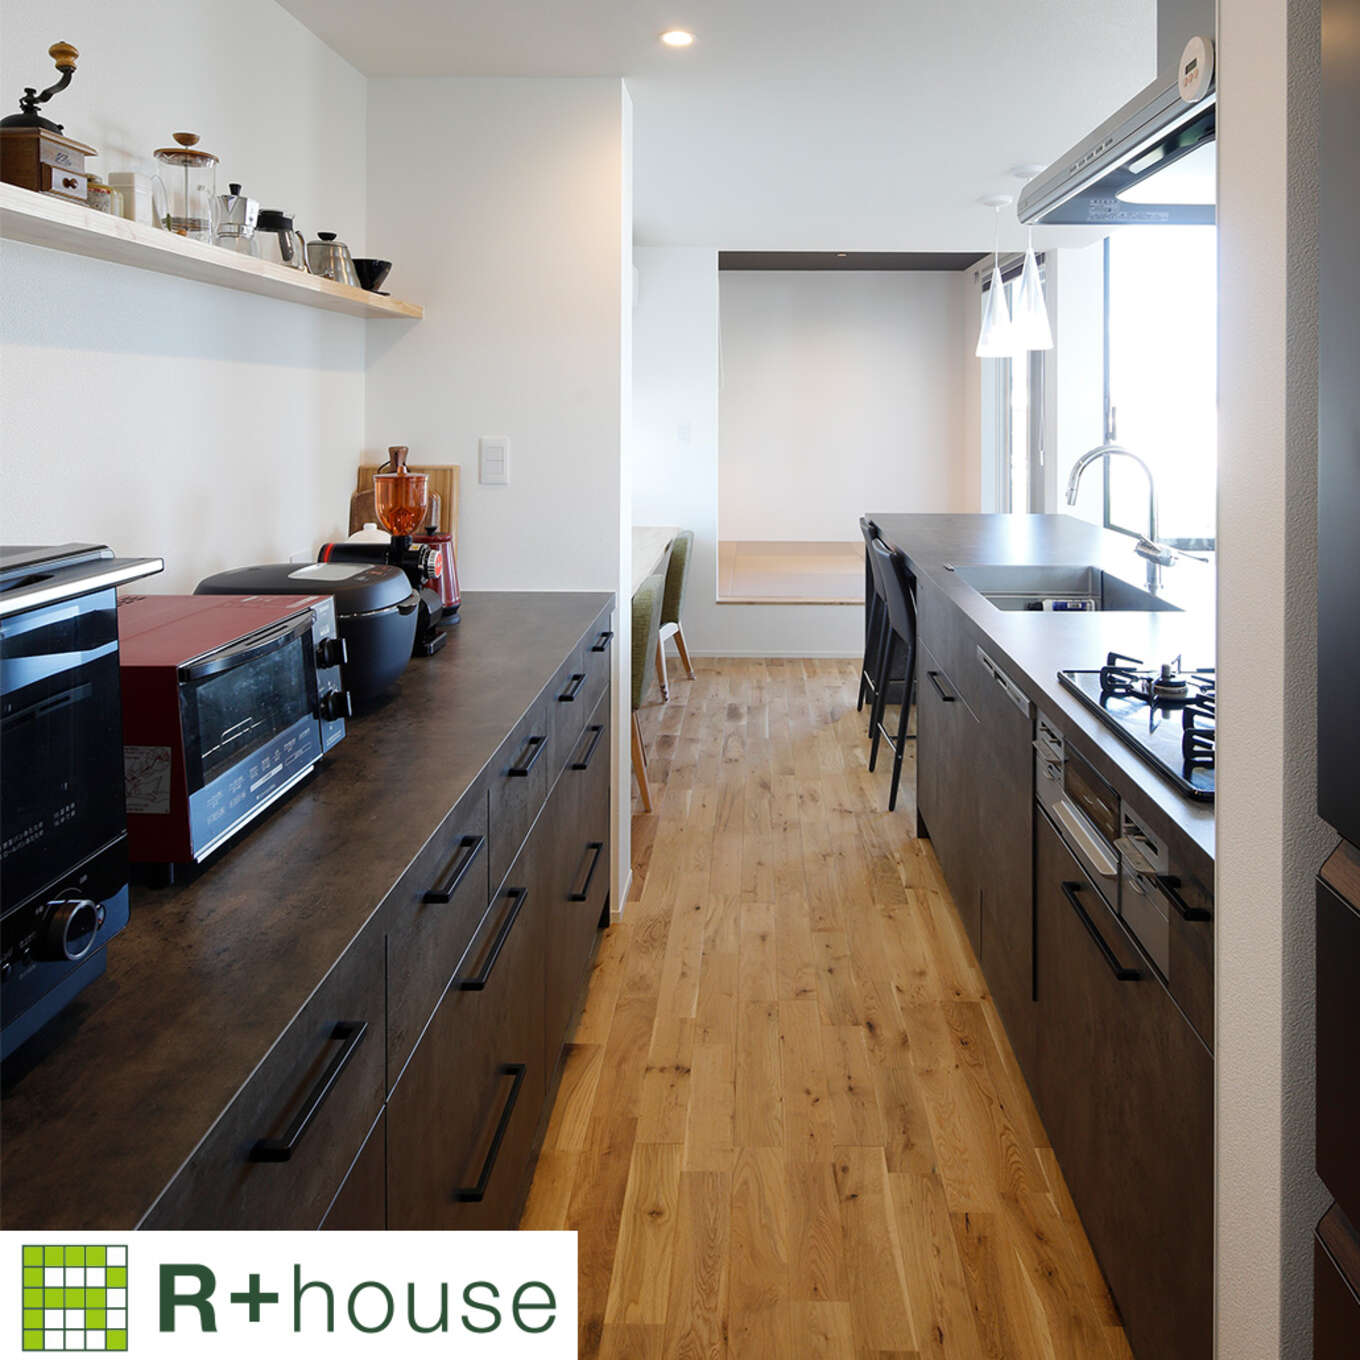 R+houseの物件のキッチンの写真です。左側は棚になっておりオーブンなど電化製品が置かれ、右側はコンロやシンク、ダイニングテーブルが並ぶ。